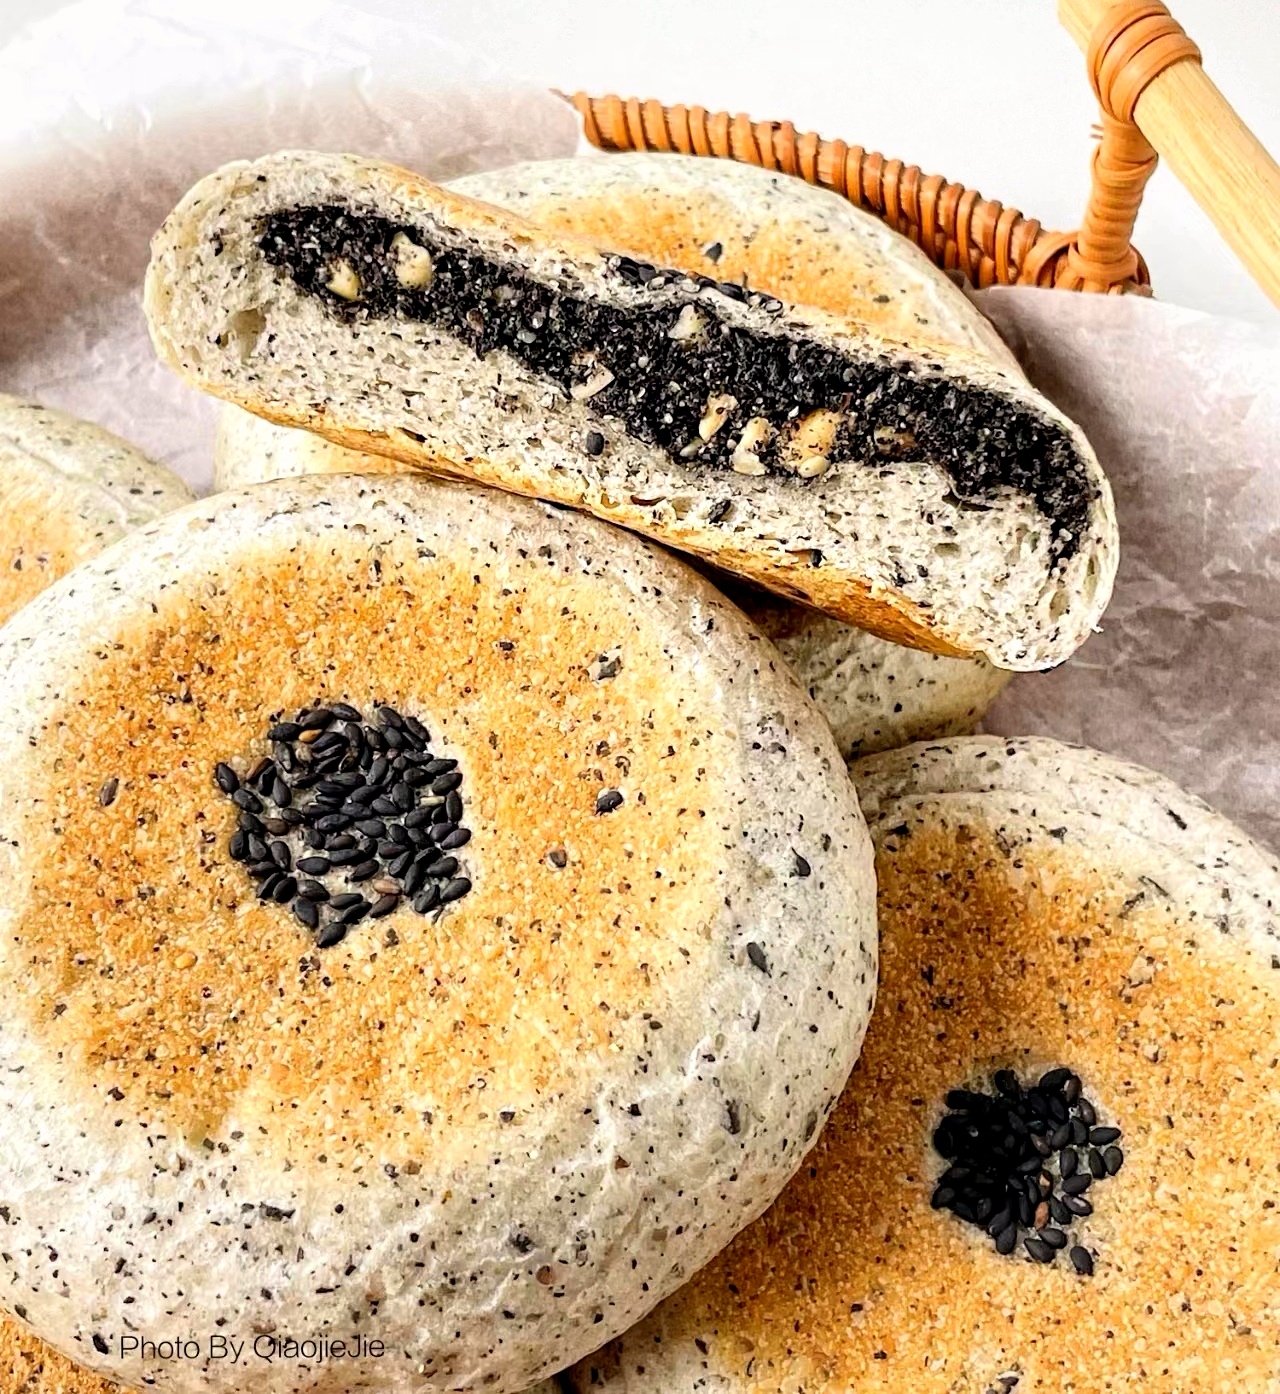 新手小白也能完美复制的日式黑芝麻养生面包的做法